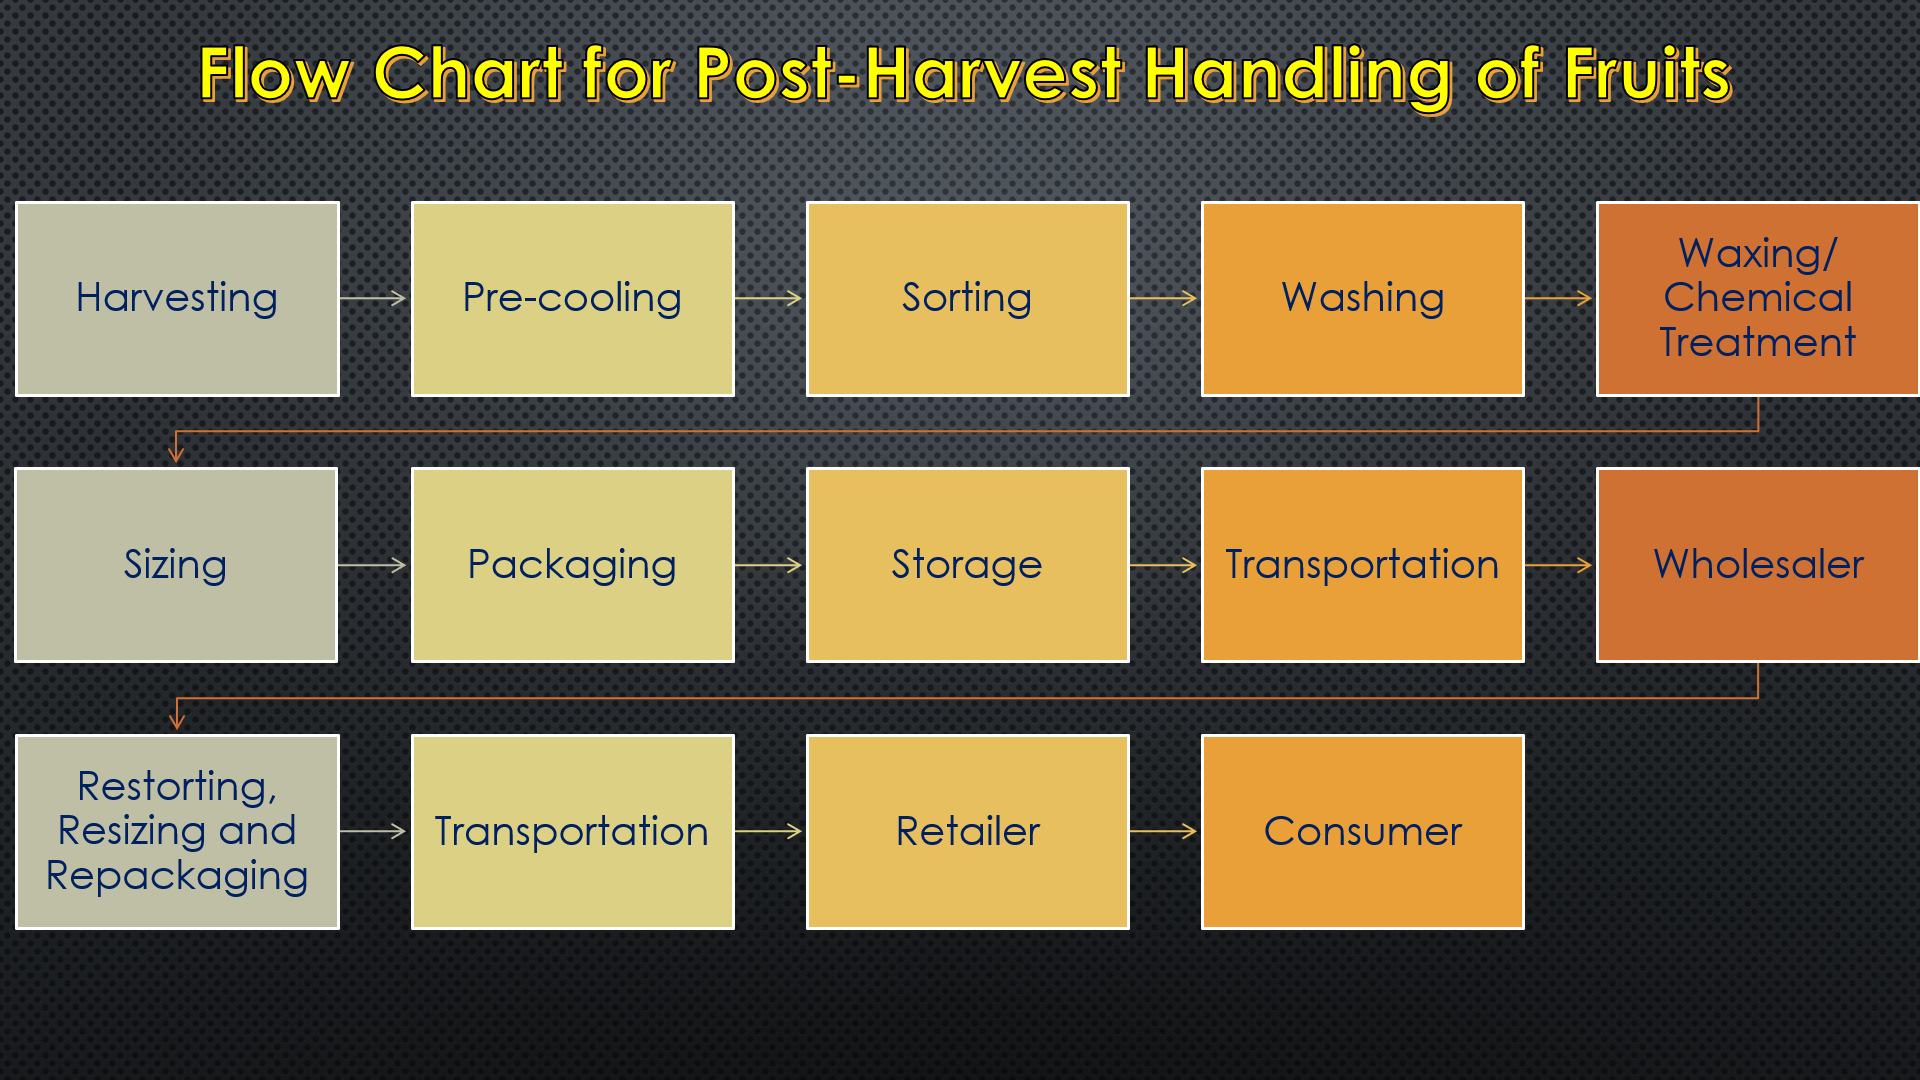 Flow Chard for Post-Harvest Handling of Fruits